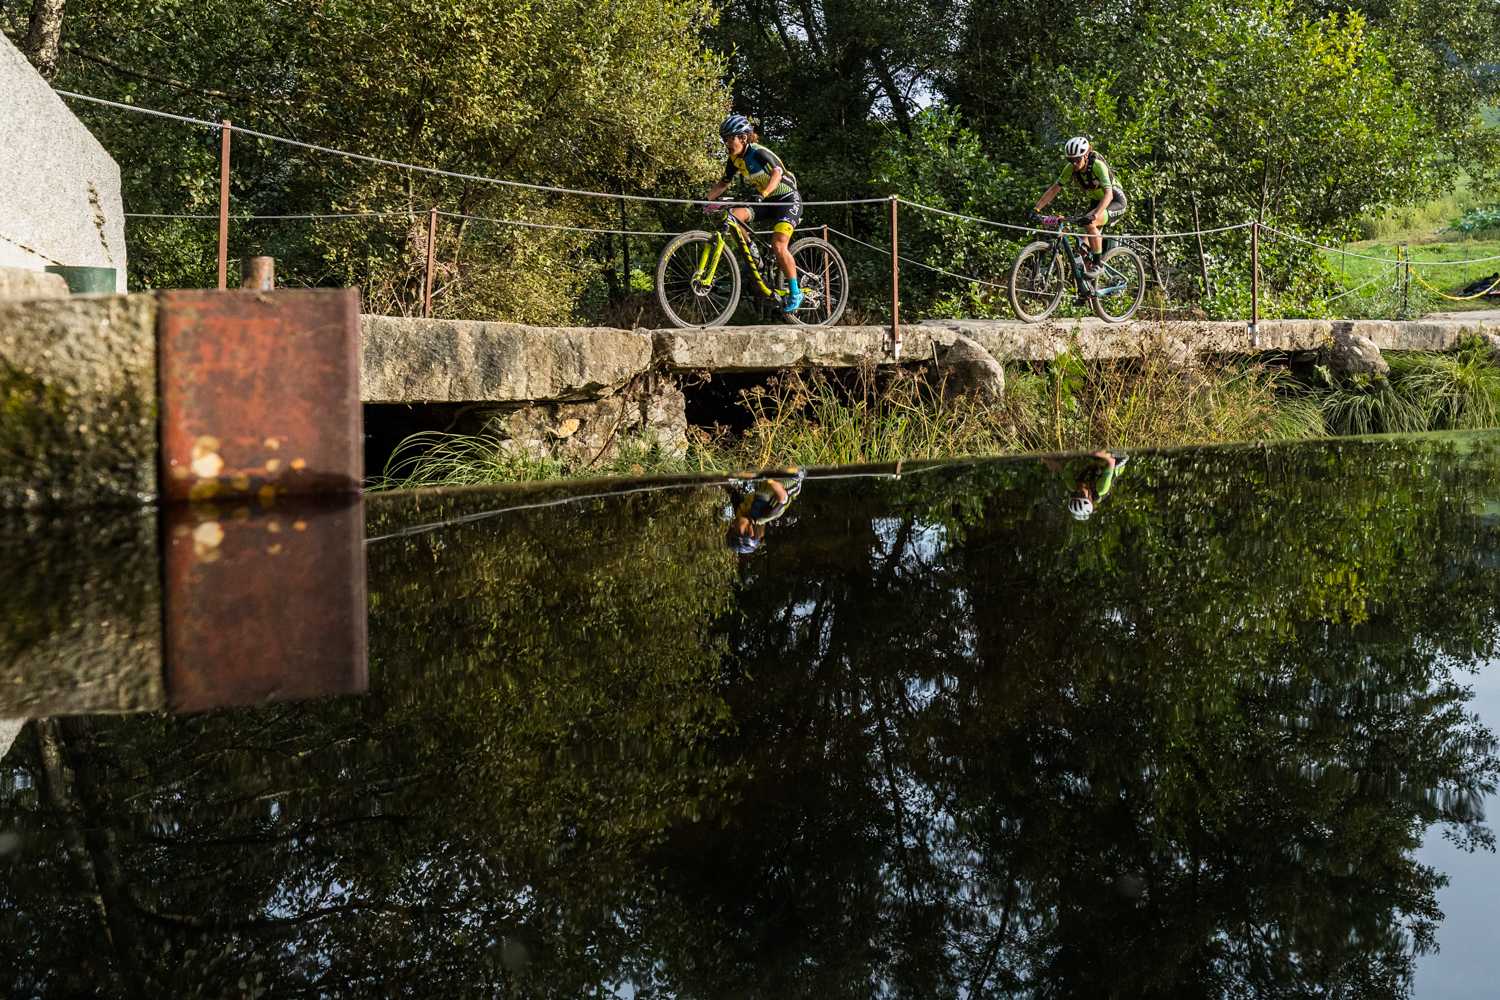 O XCM galego roza o 10 no Campionato de España-Lalín Bike Race-Xacobeo 2021